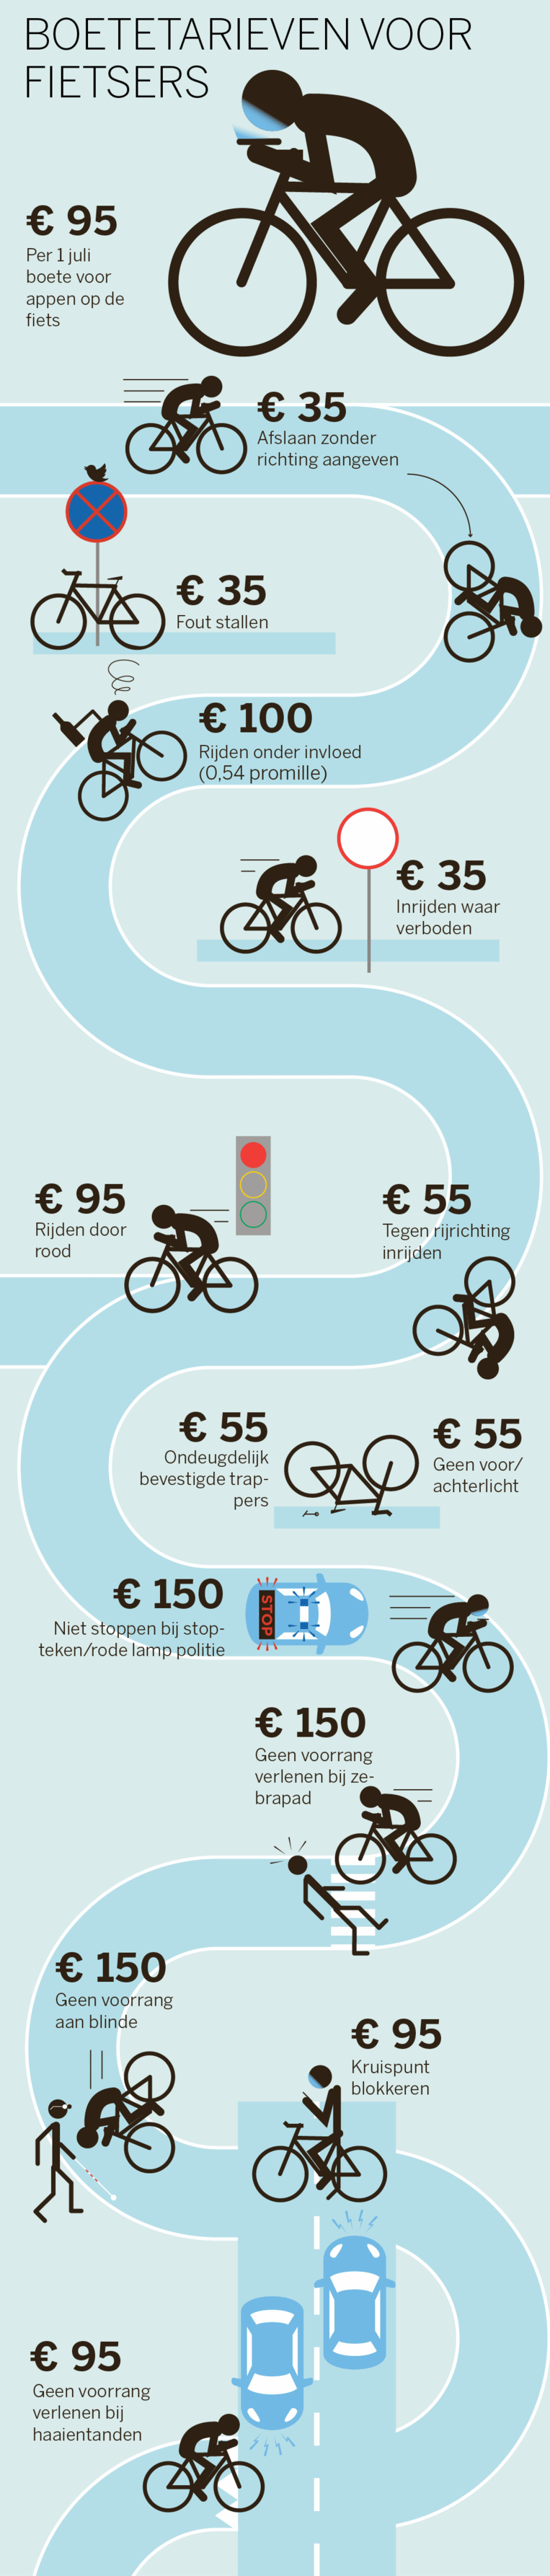 aardolie Te voet Eerder Appen op de fiets? Dat kan vanaf 1 juli 95 euro kosten | De Volkskrant